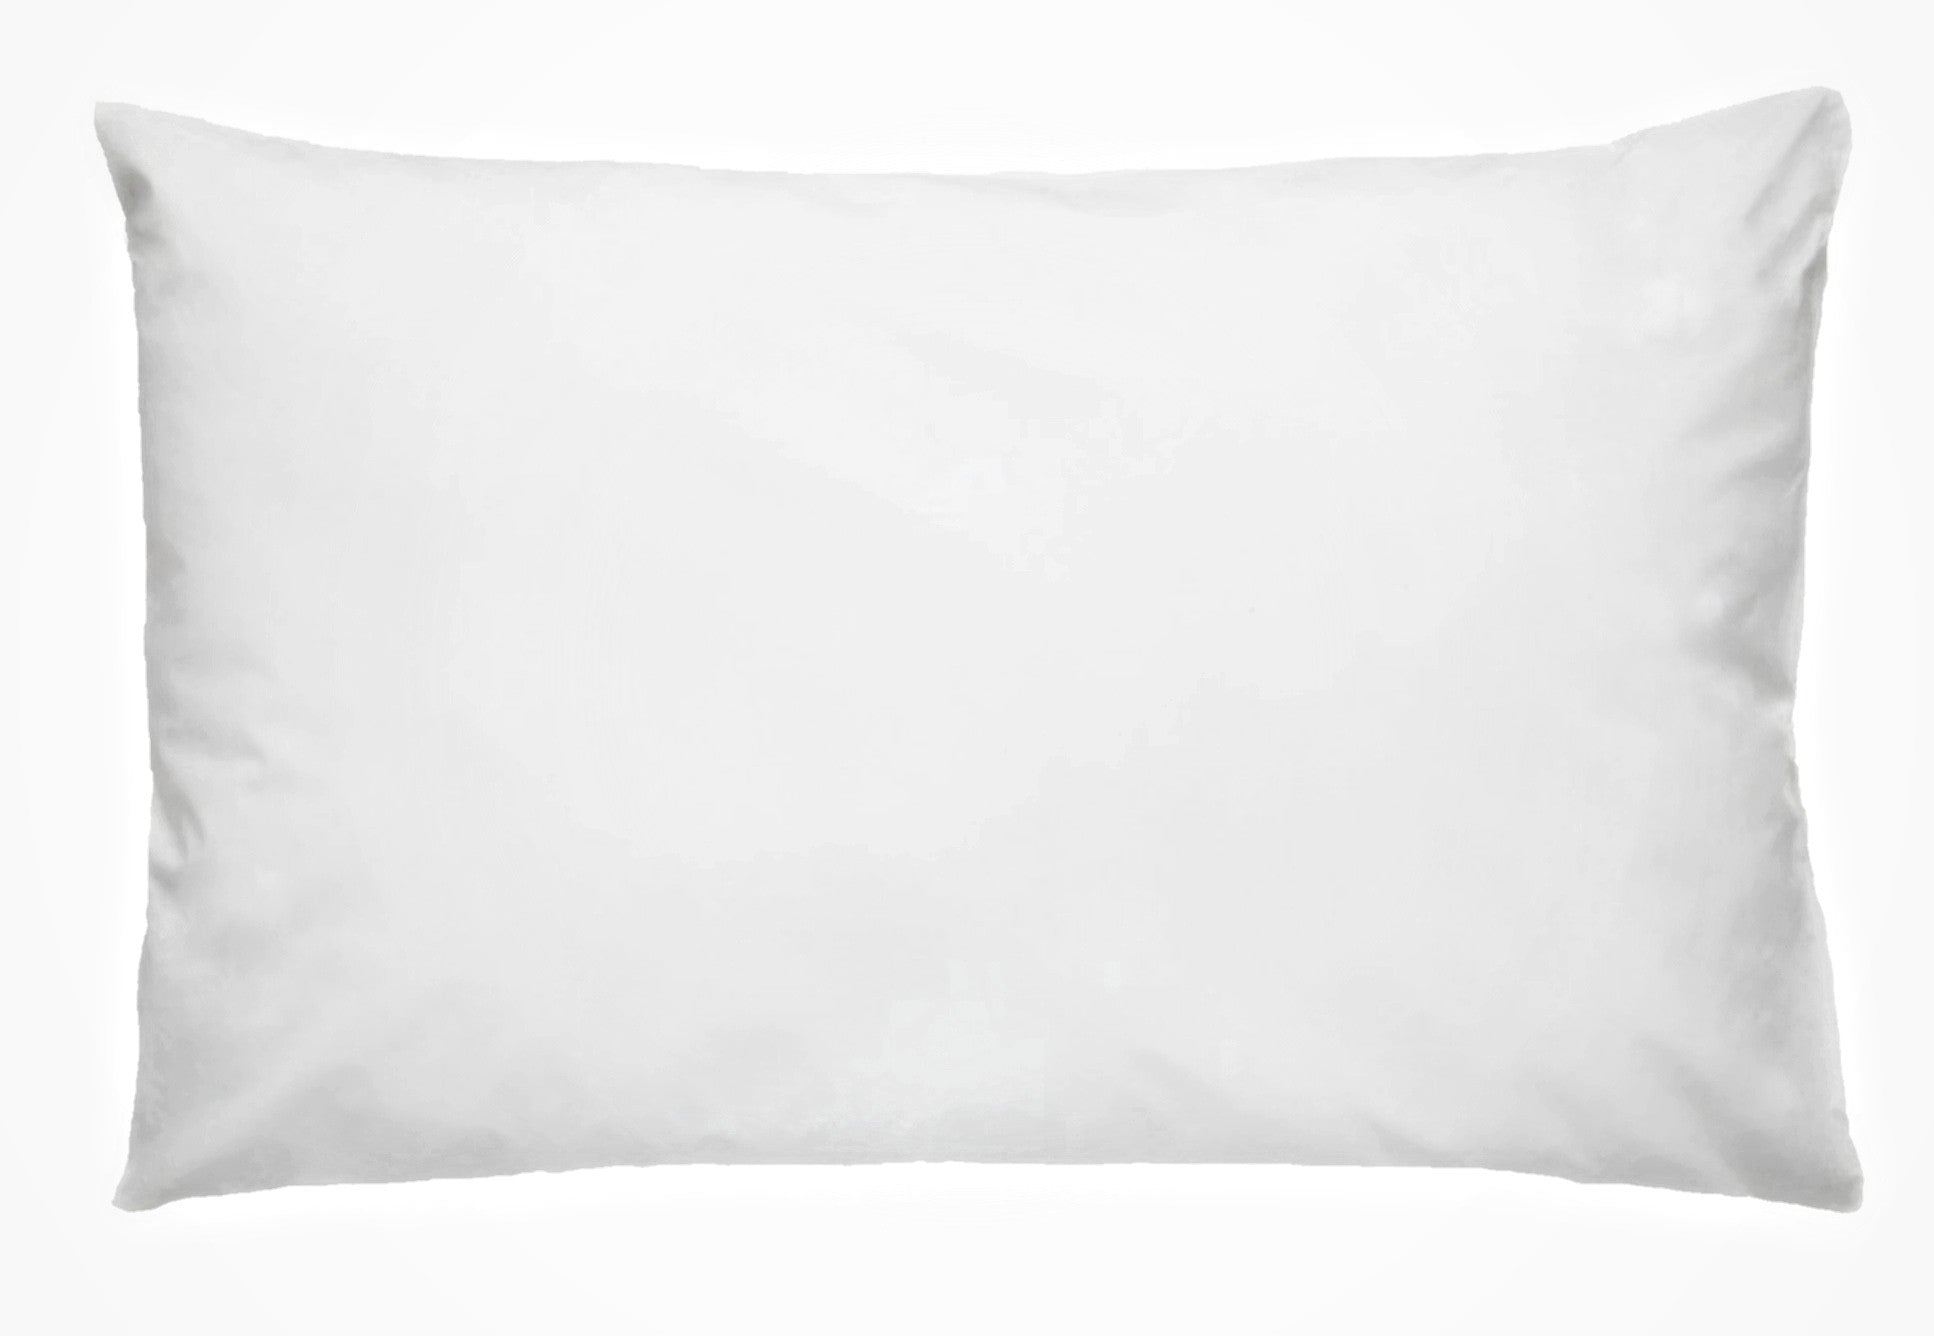 Baavet pure wool 800g (s) medium pillow